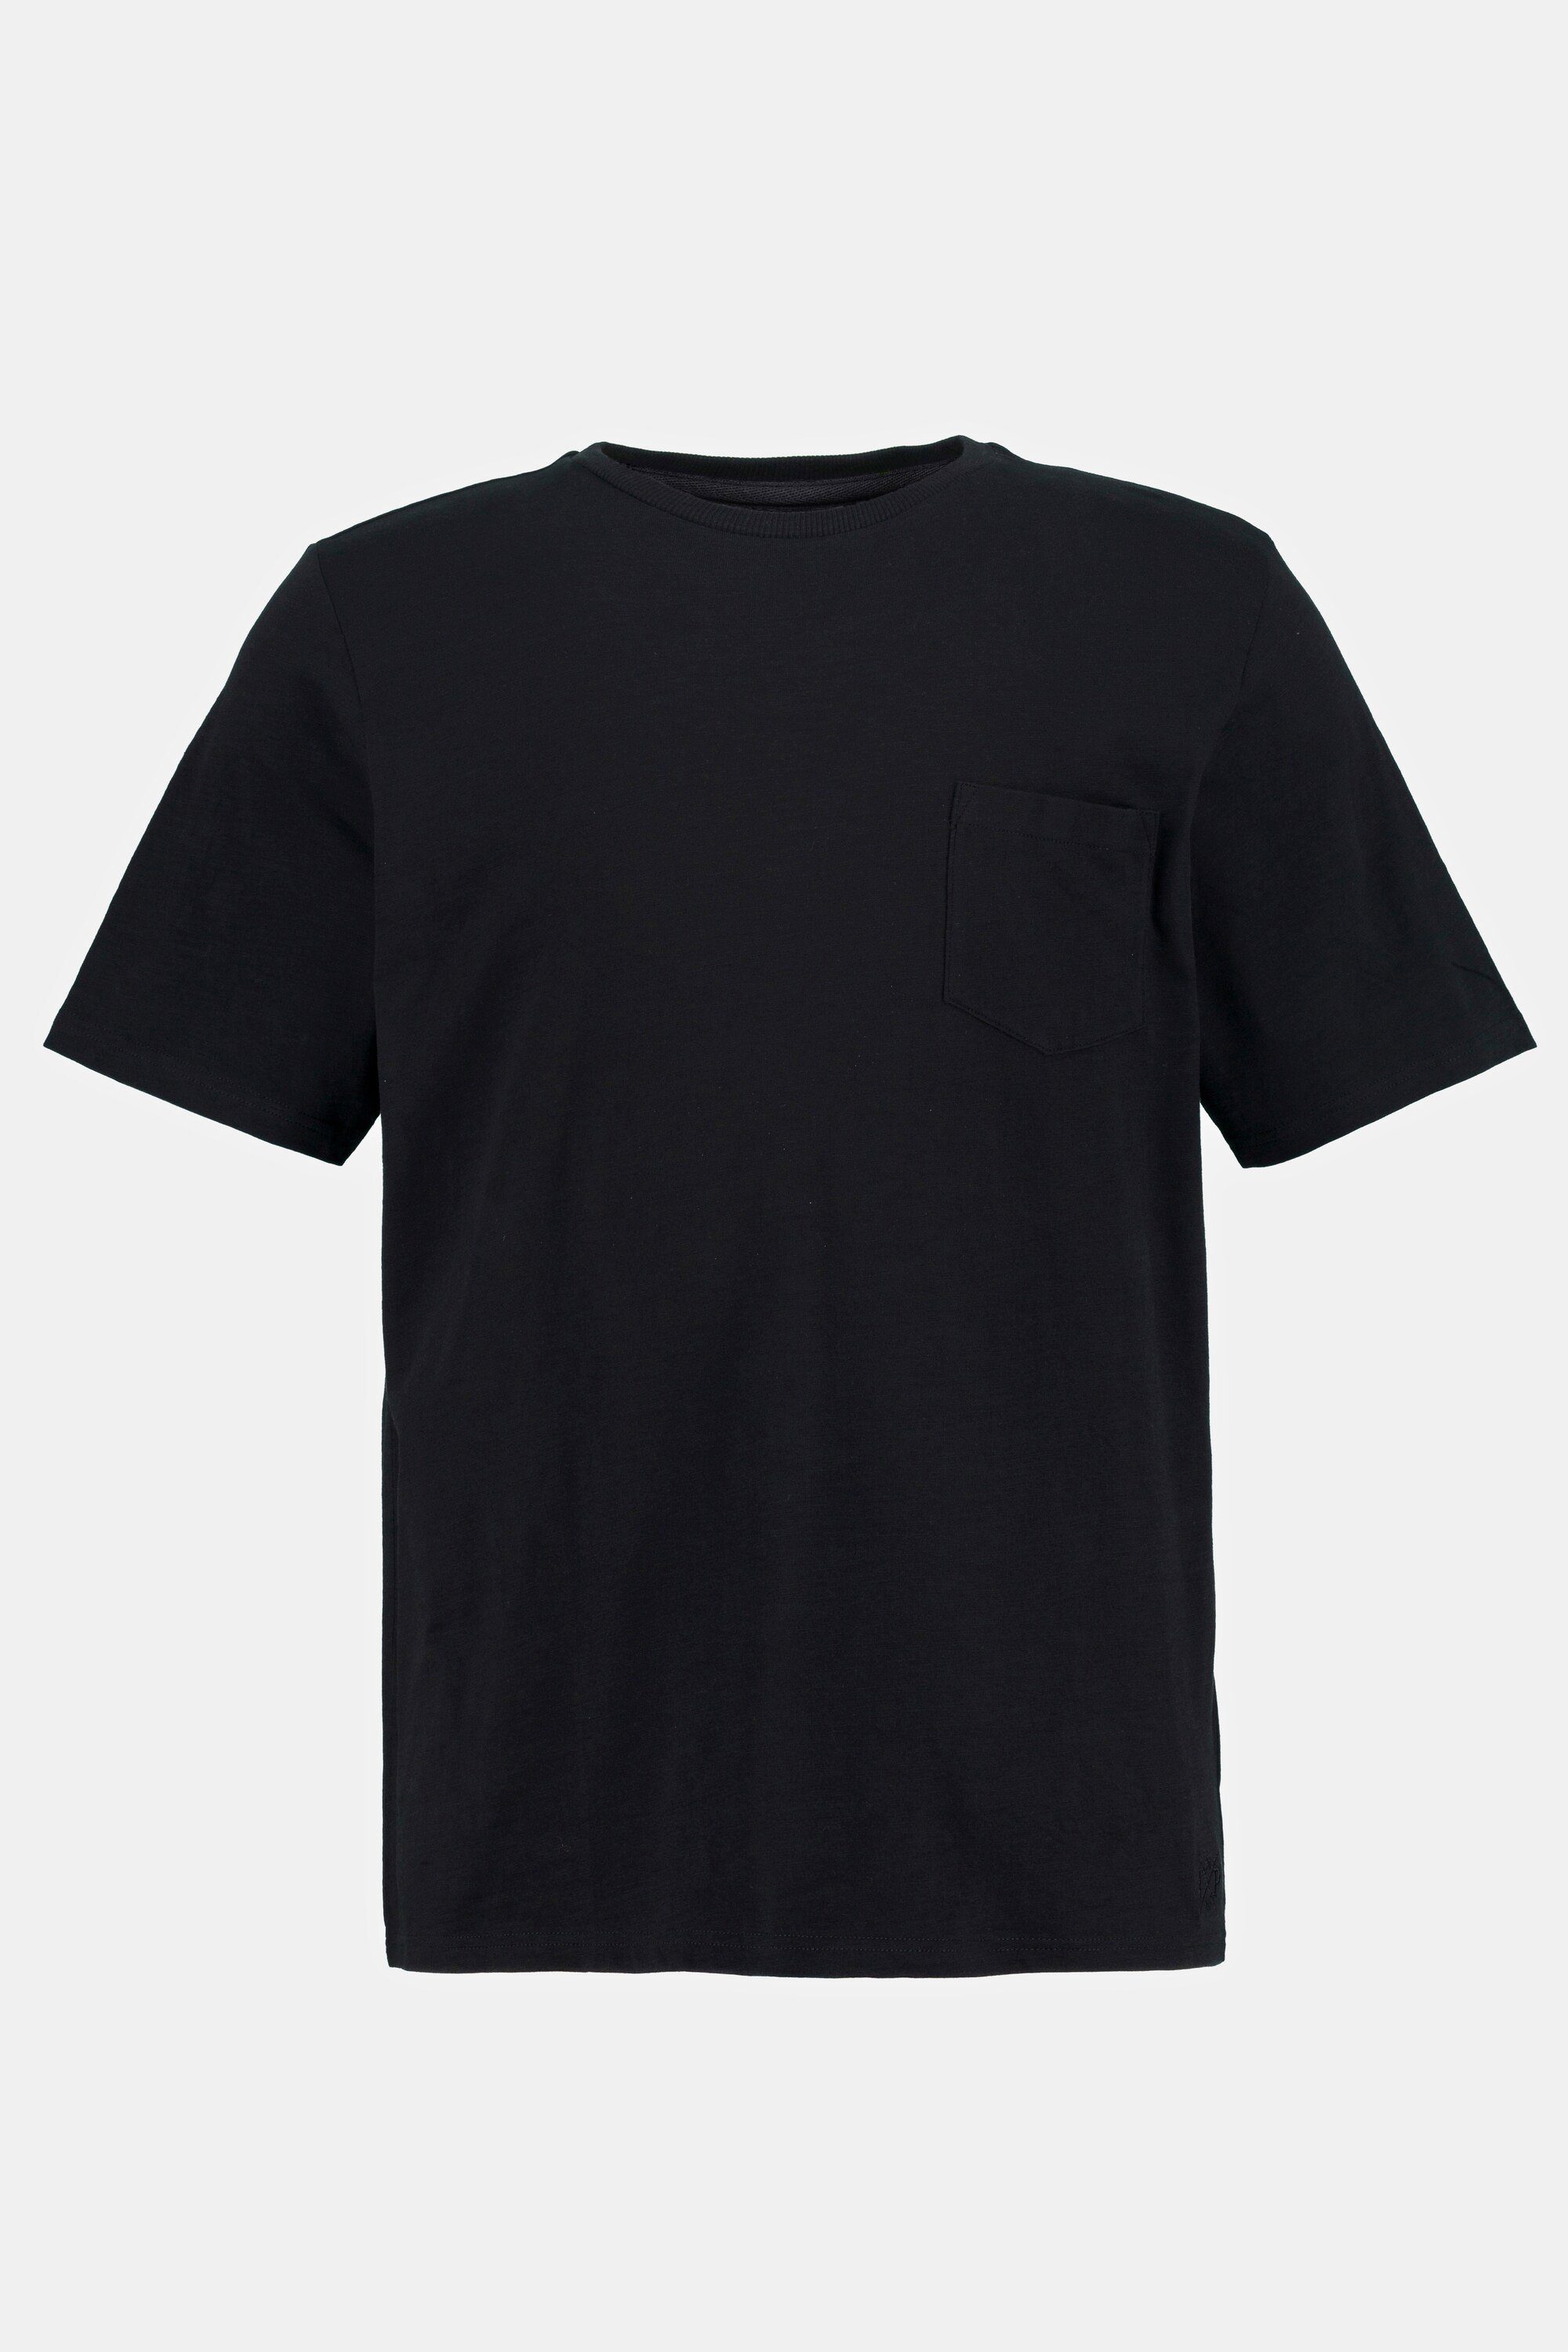 Herren Poloshirts JP1880 Poloshirt T-Shirt Bio-Baumwolle Halbarm